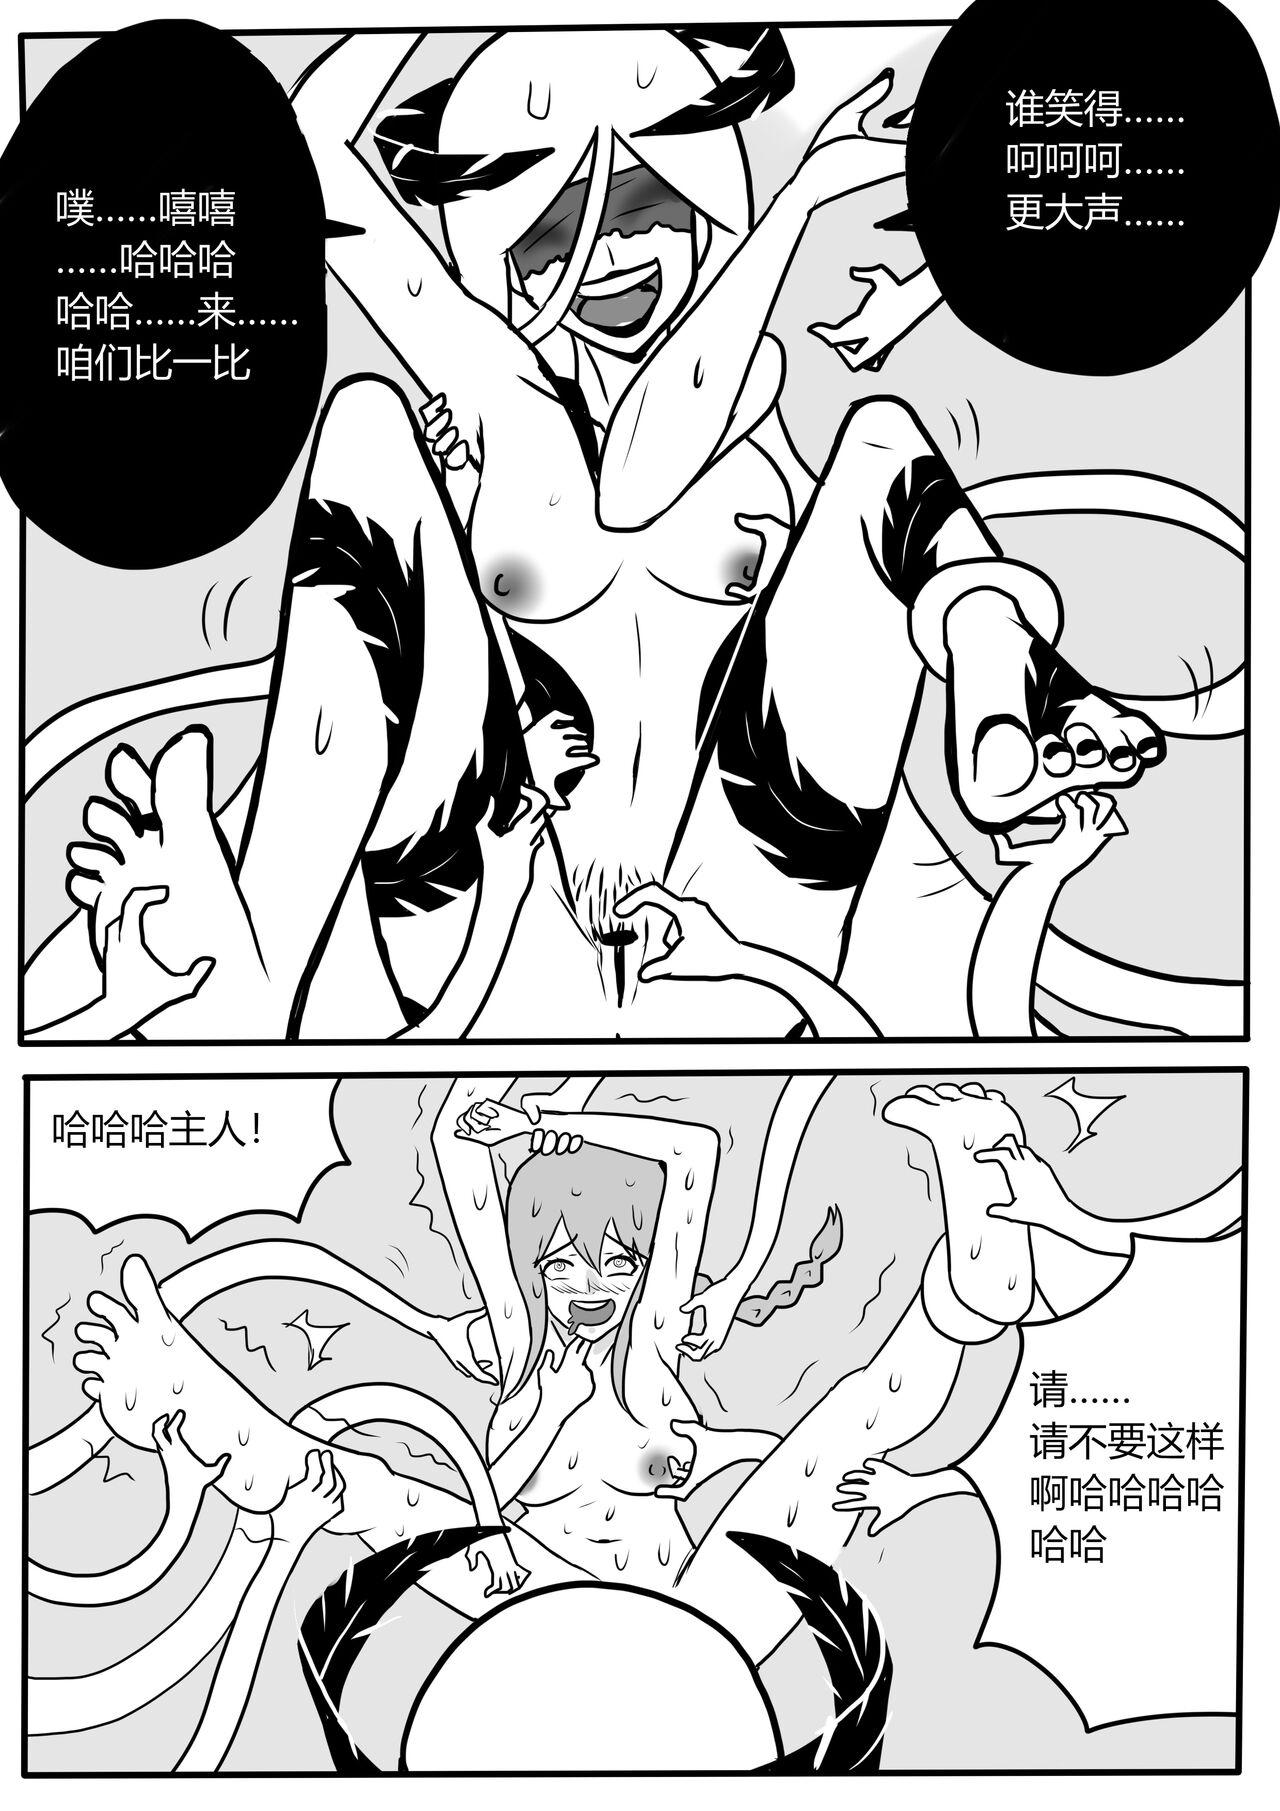 Bondage Makima tk manga - Chainsaw man Nudity - Page 12